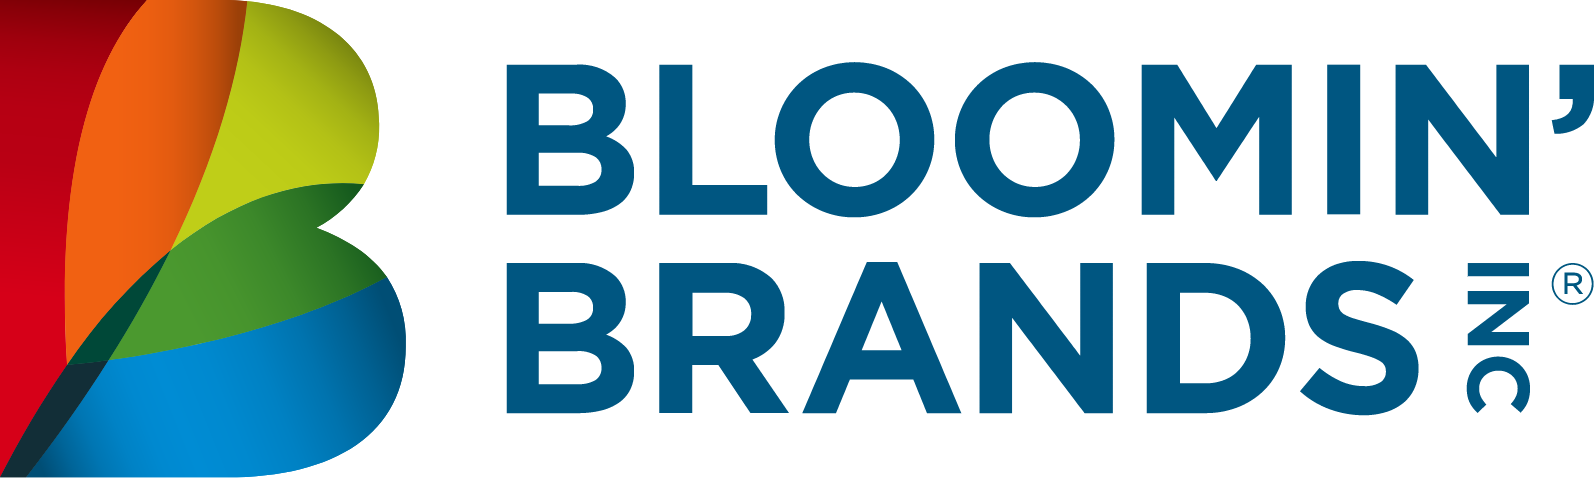 Bloomin' Brands logo large (transparent PNG)